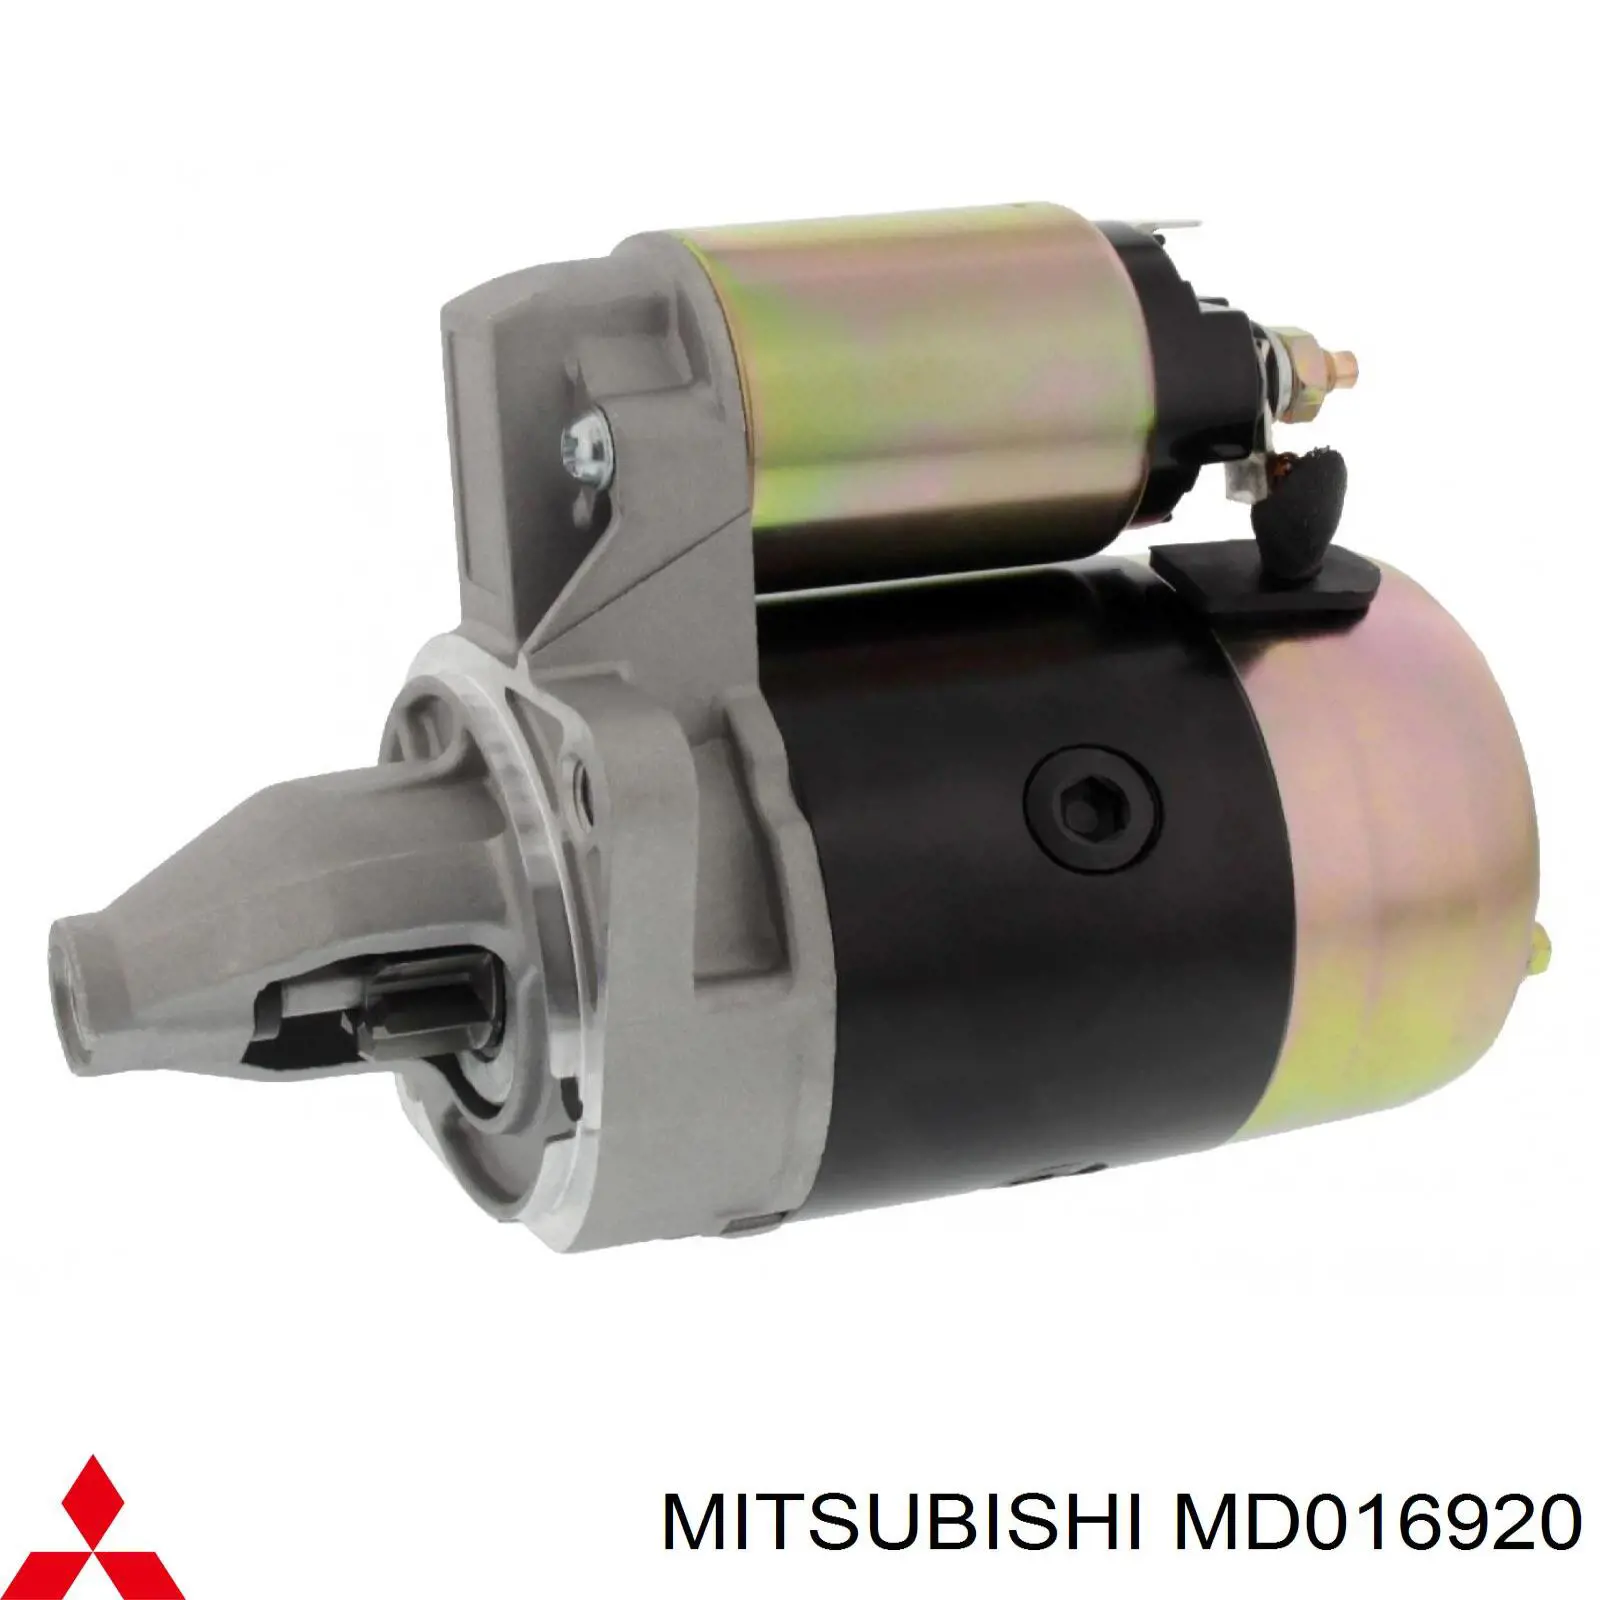 MD 016920 Mitsubishi стартер